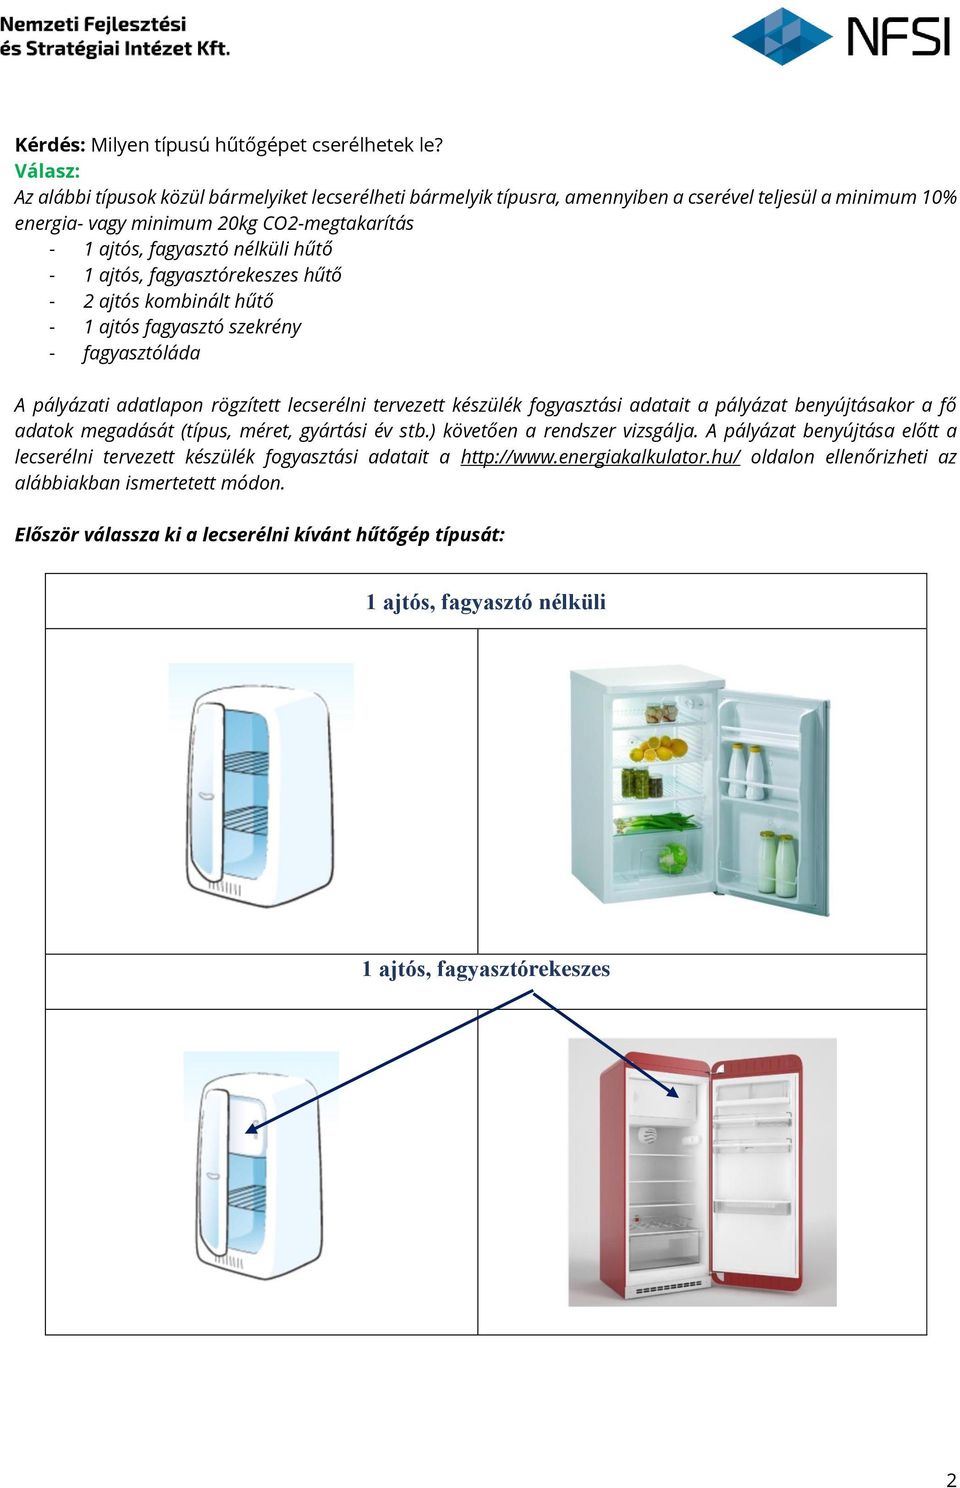 Otthon Melege Program Háztartási nagygépek (hűtő és fagyasztó készülék)  energia megtakarítást eredményező cseréje alprogram - PDF Free Download